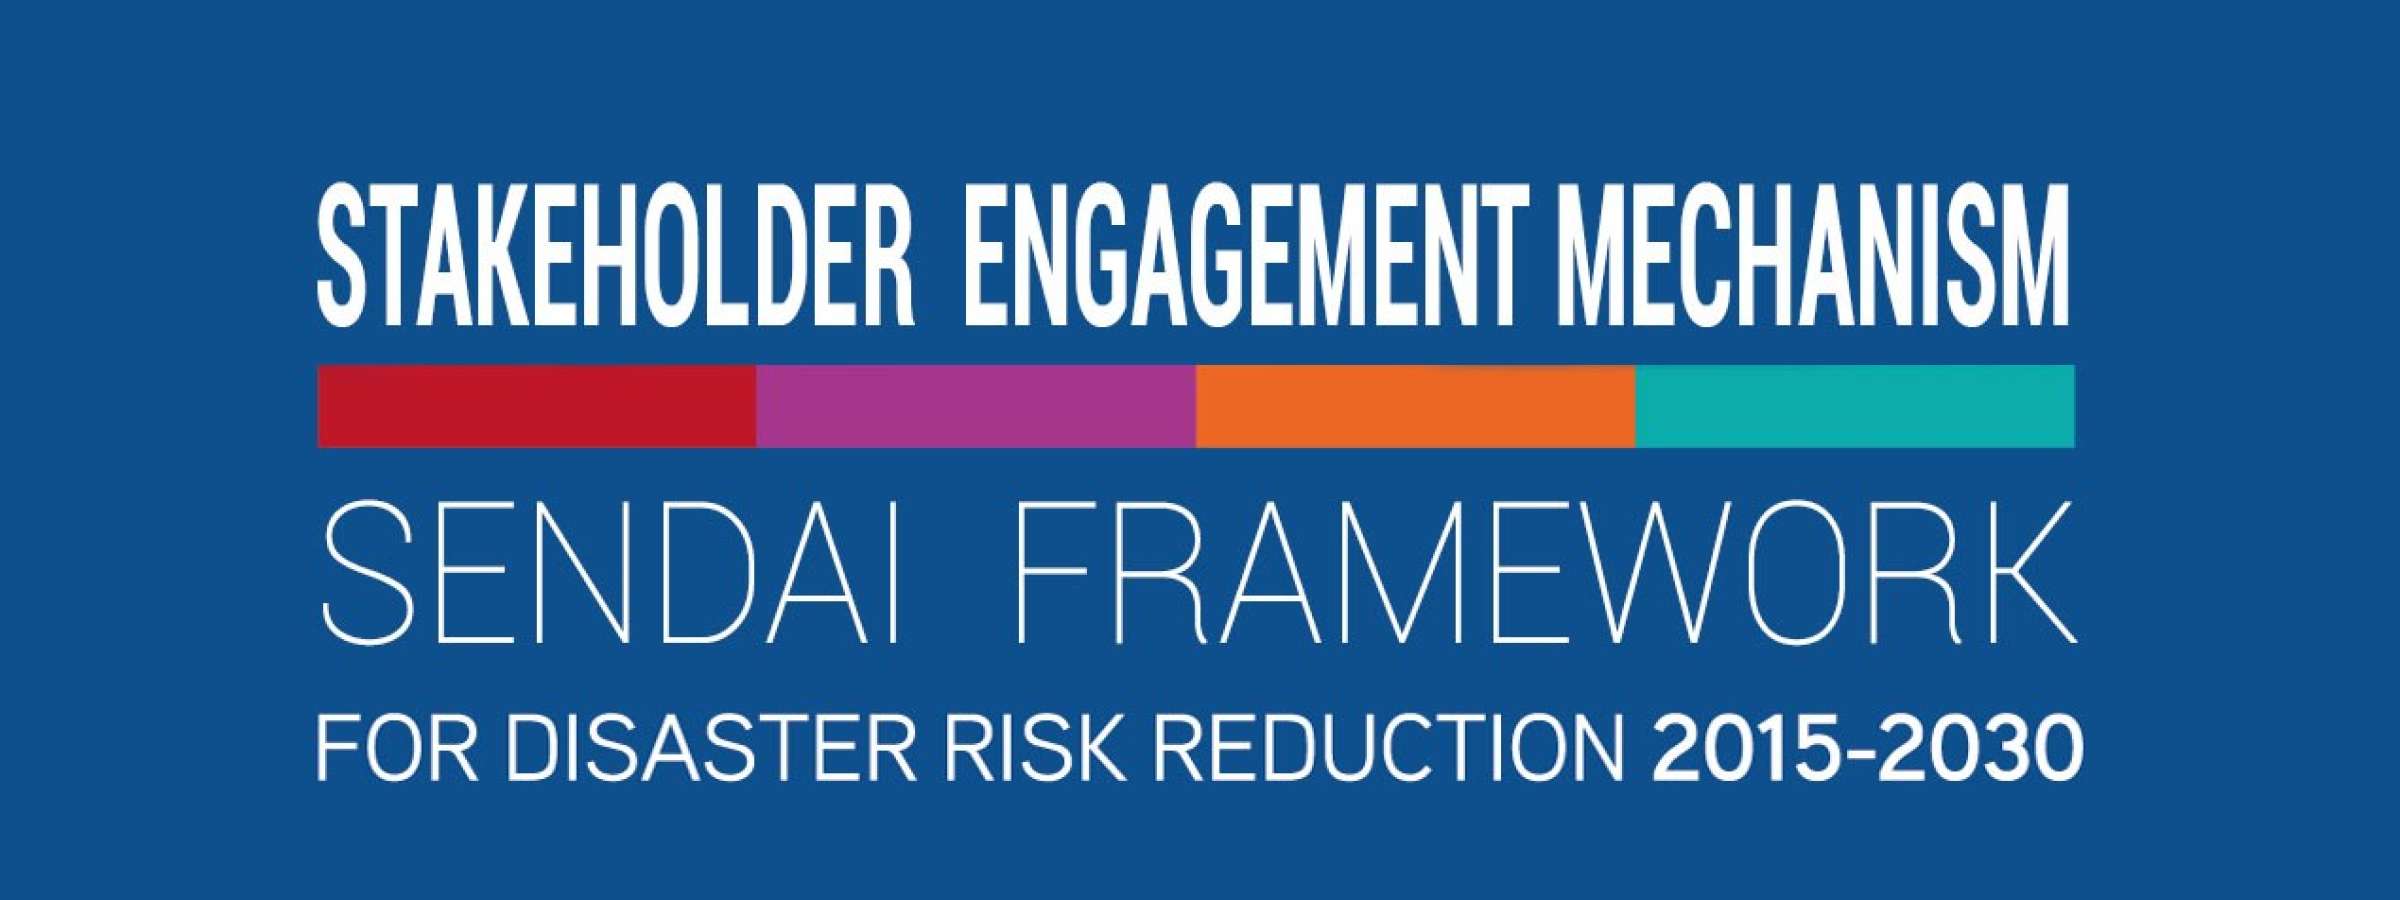 Stakeholder Engagement Mechanism Logo